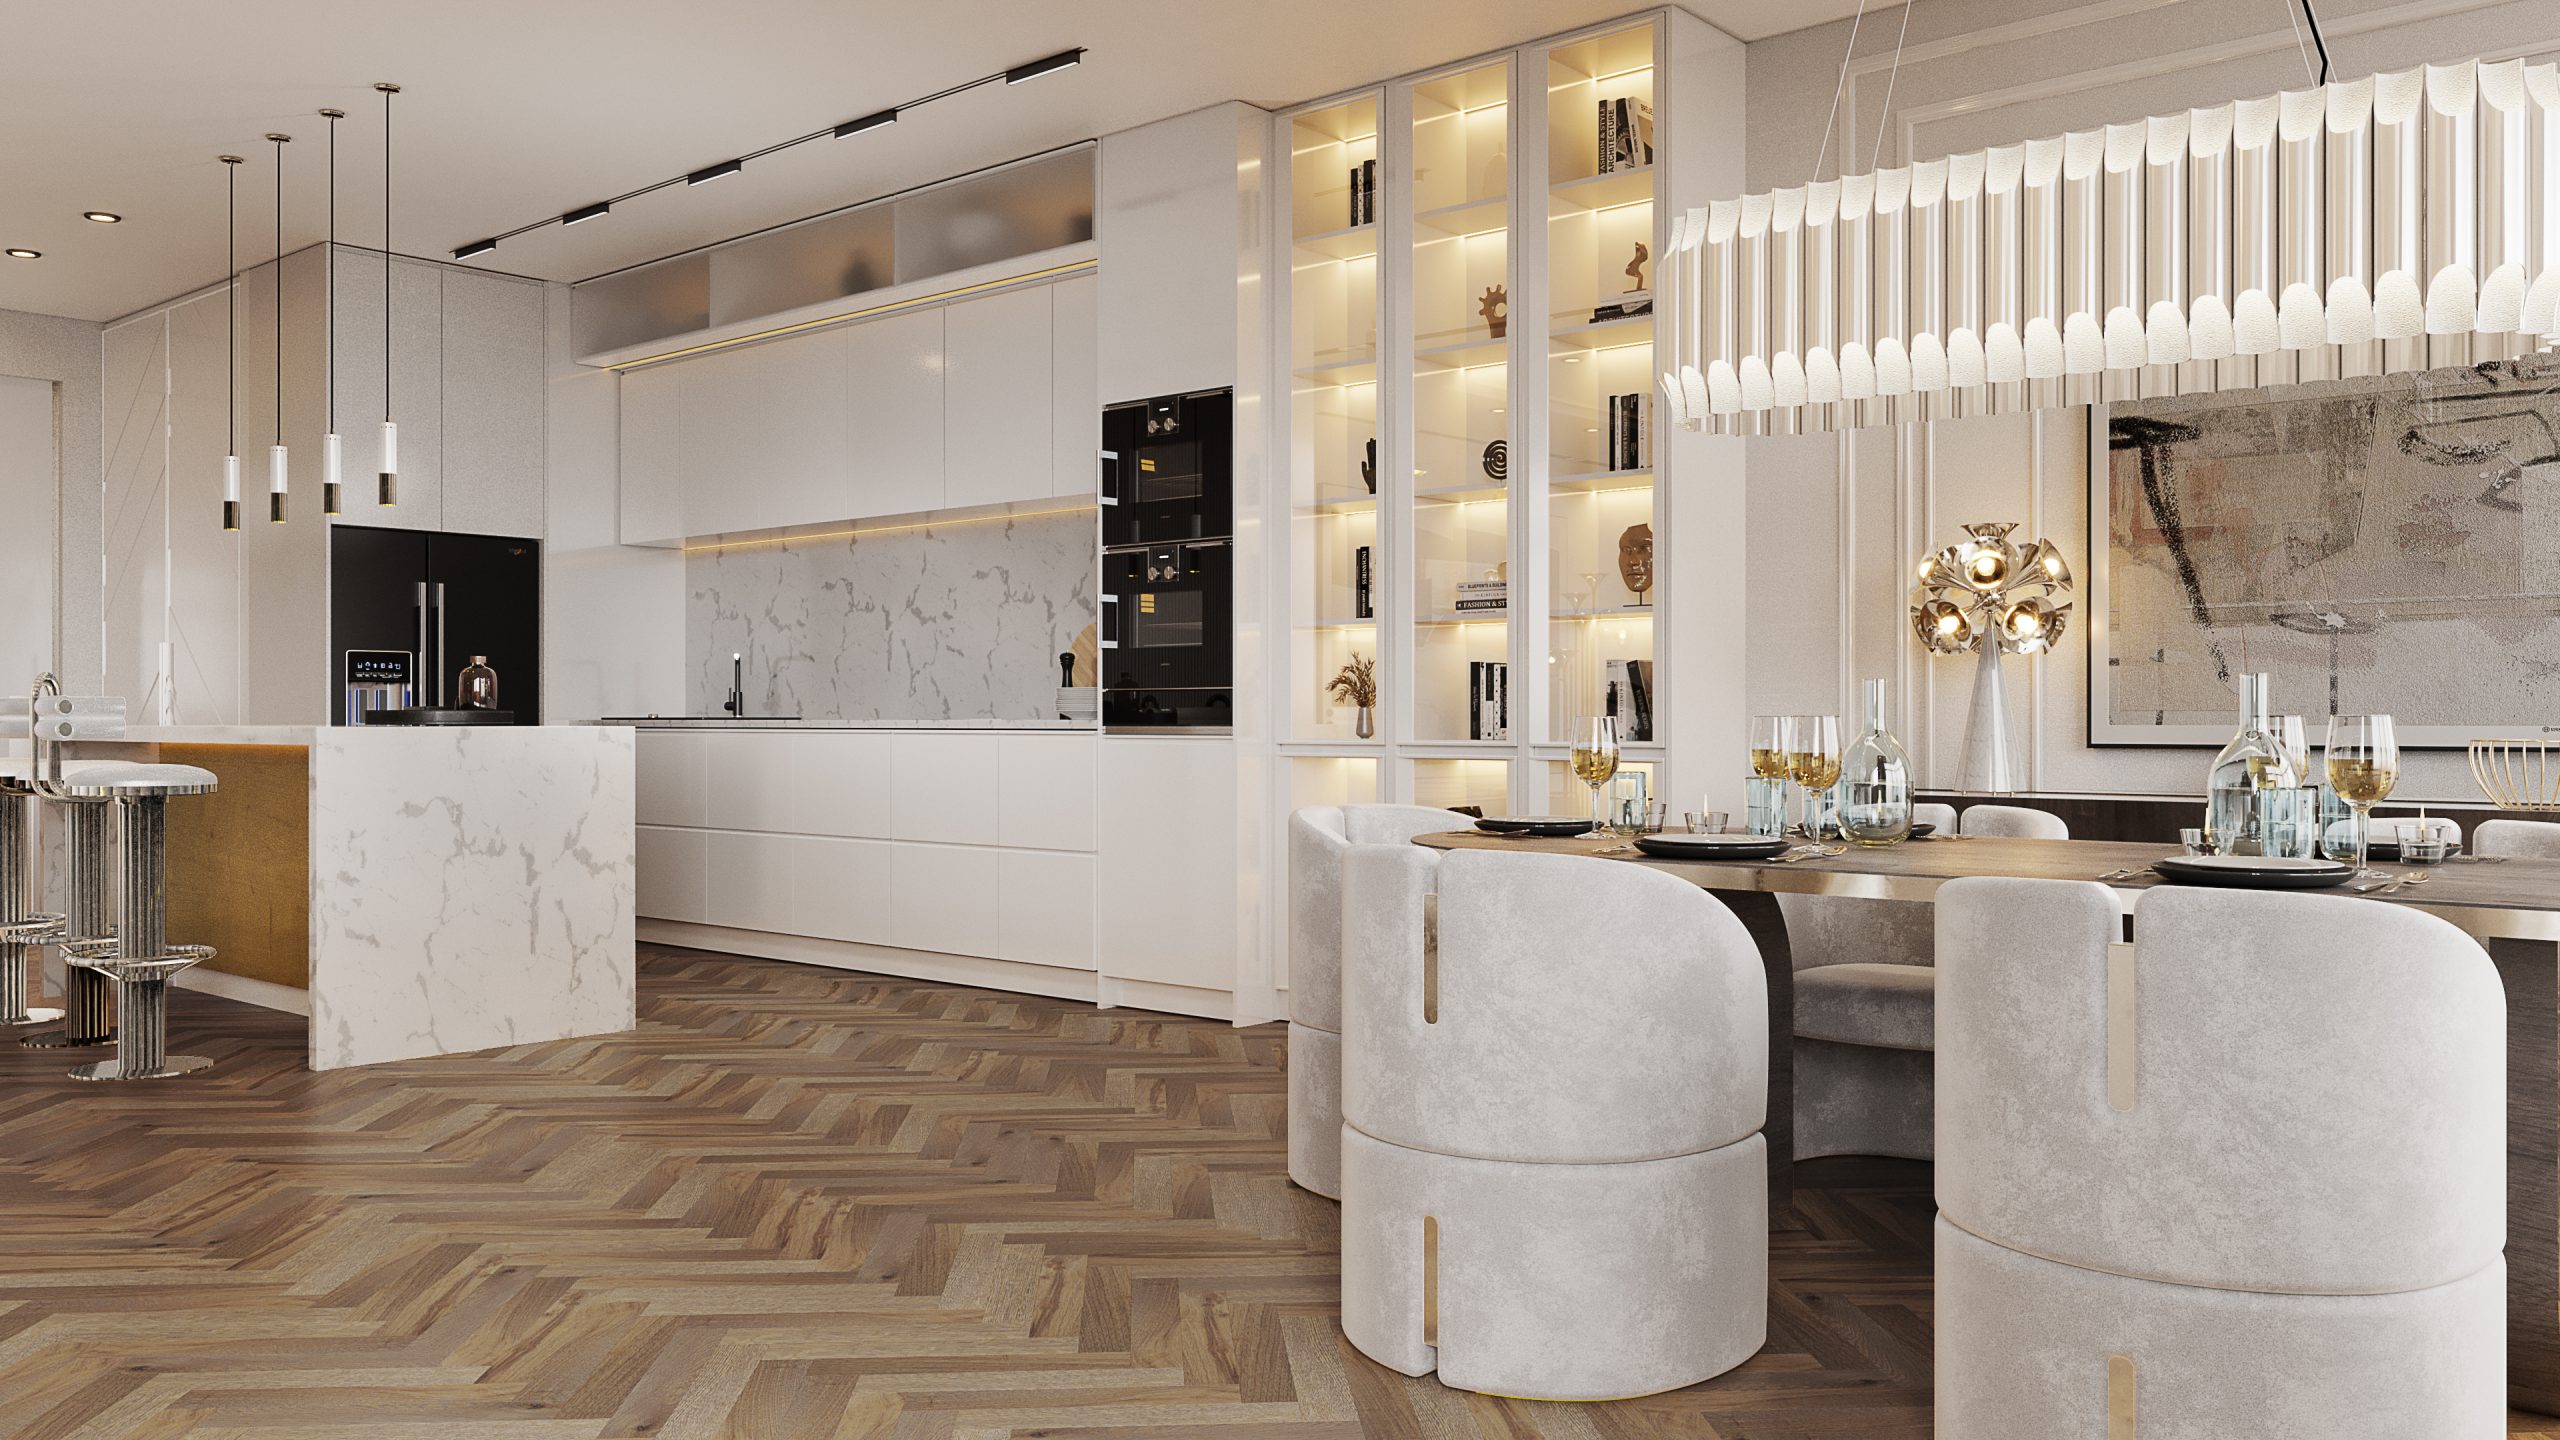 Exclusive Modern Kitchen Designs In A Million Dollar Apartment